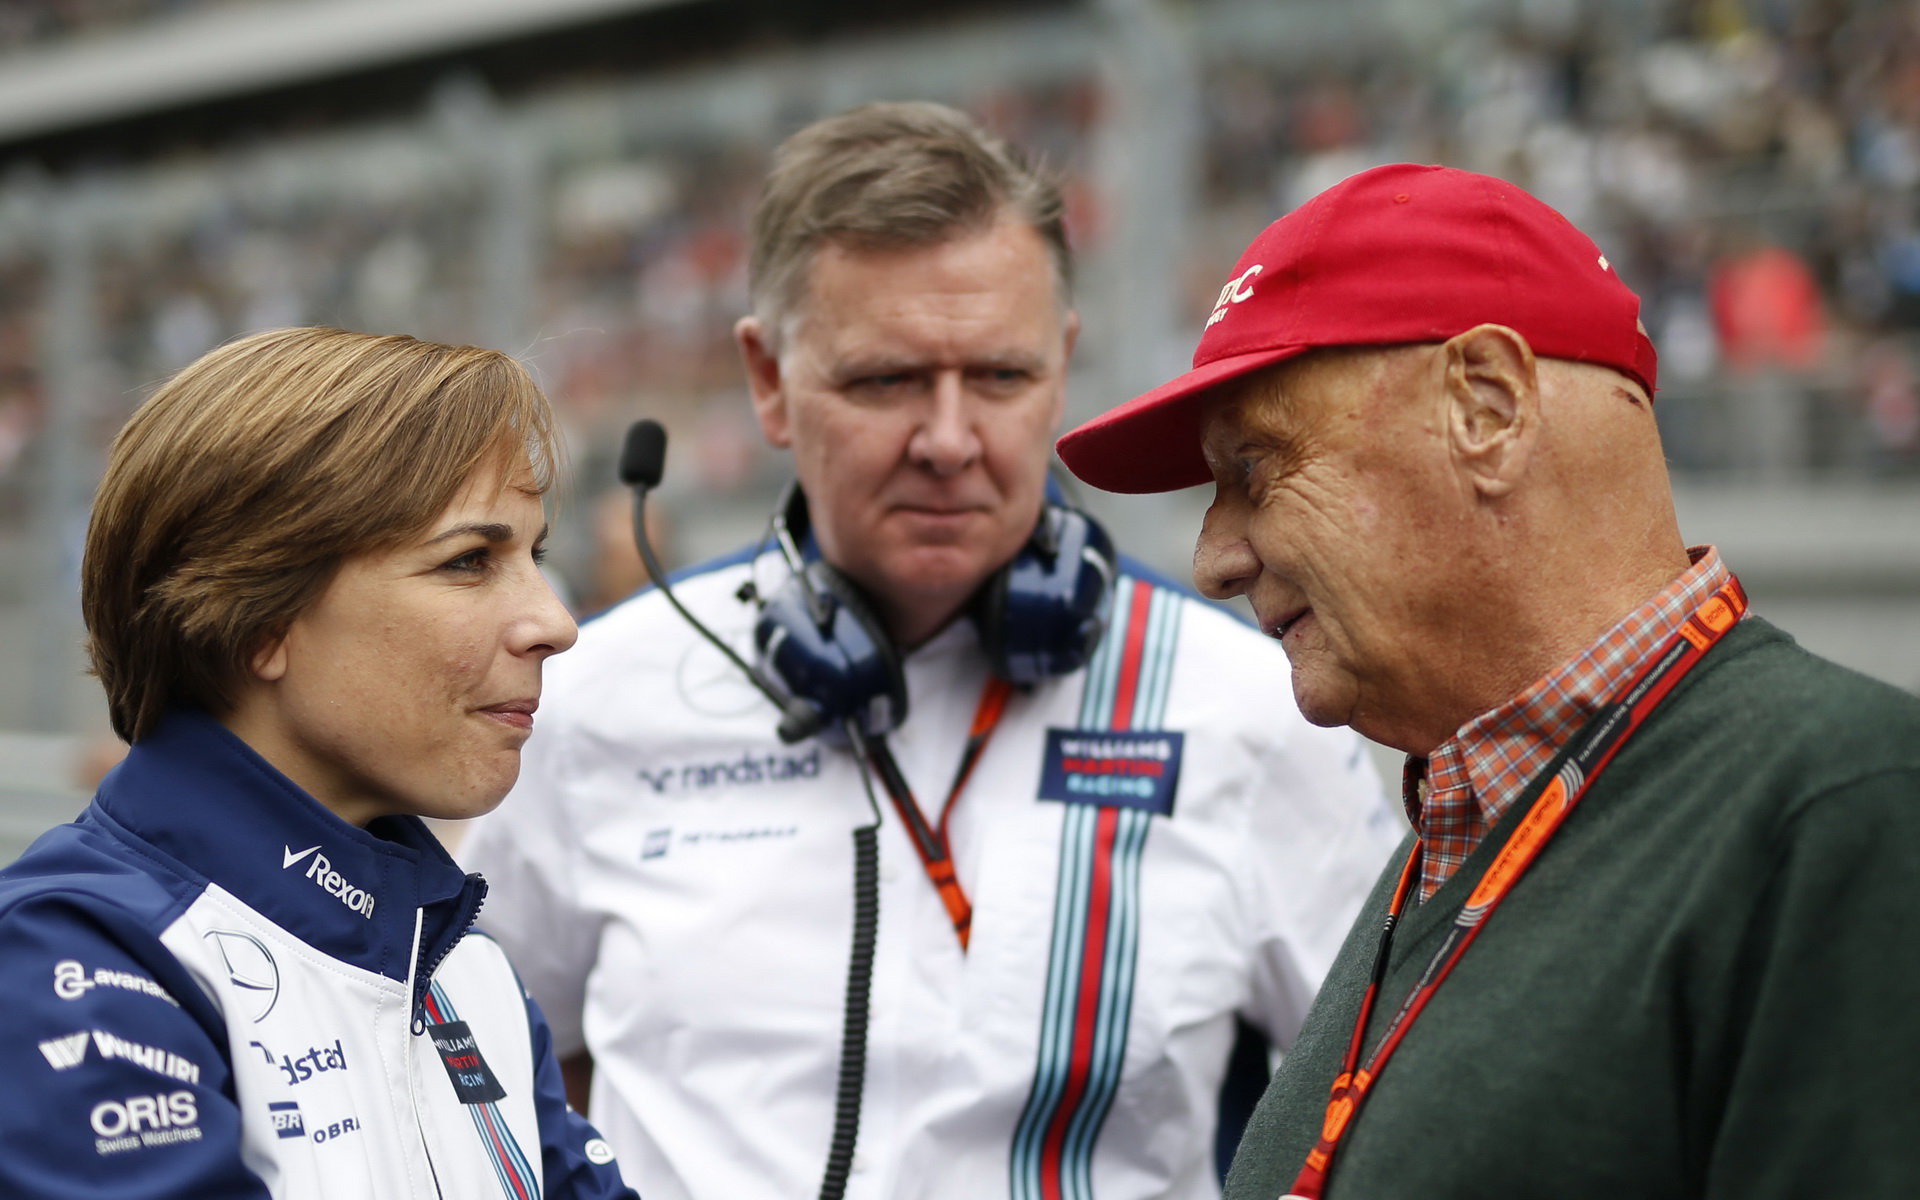 Claire Williamsová a Niki Lauda v Soči